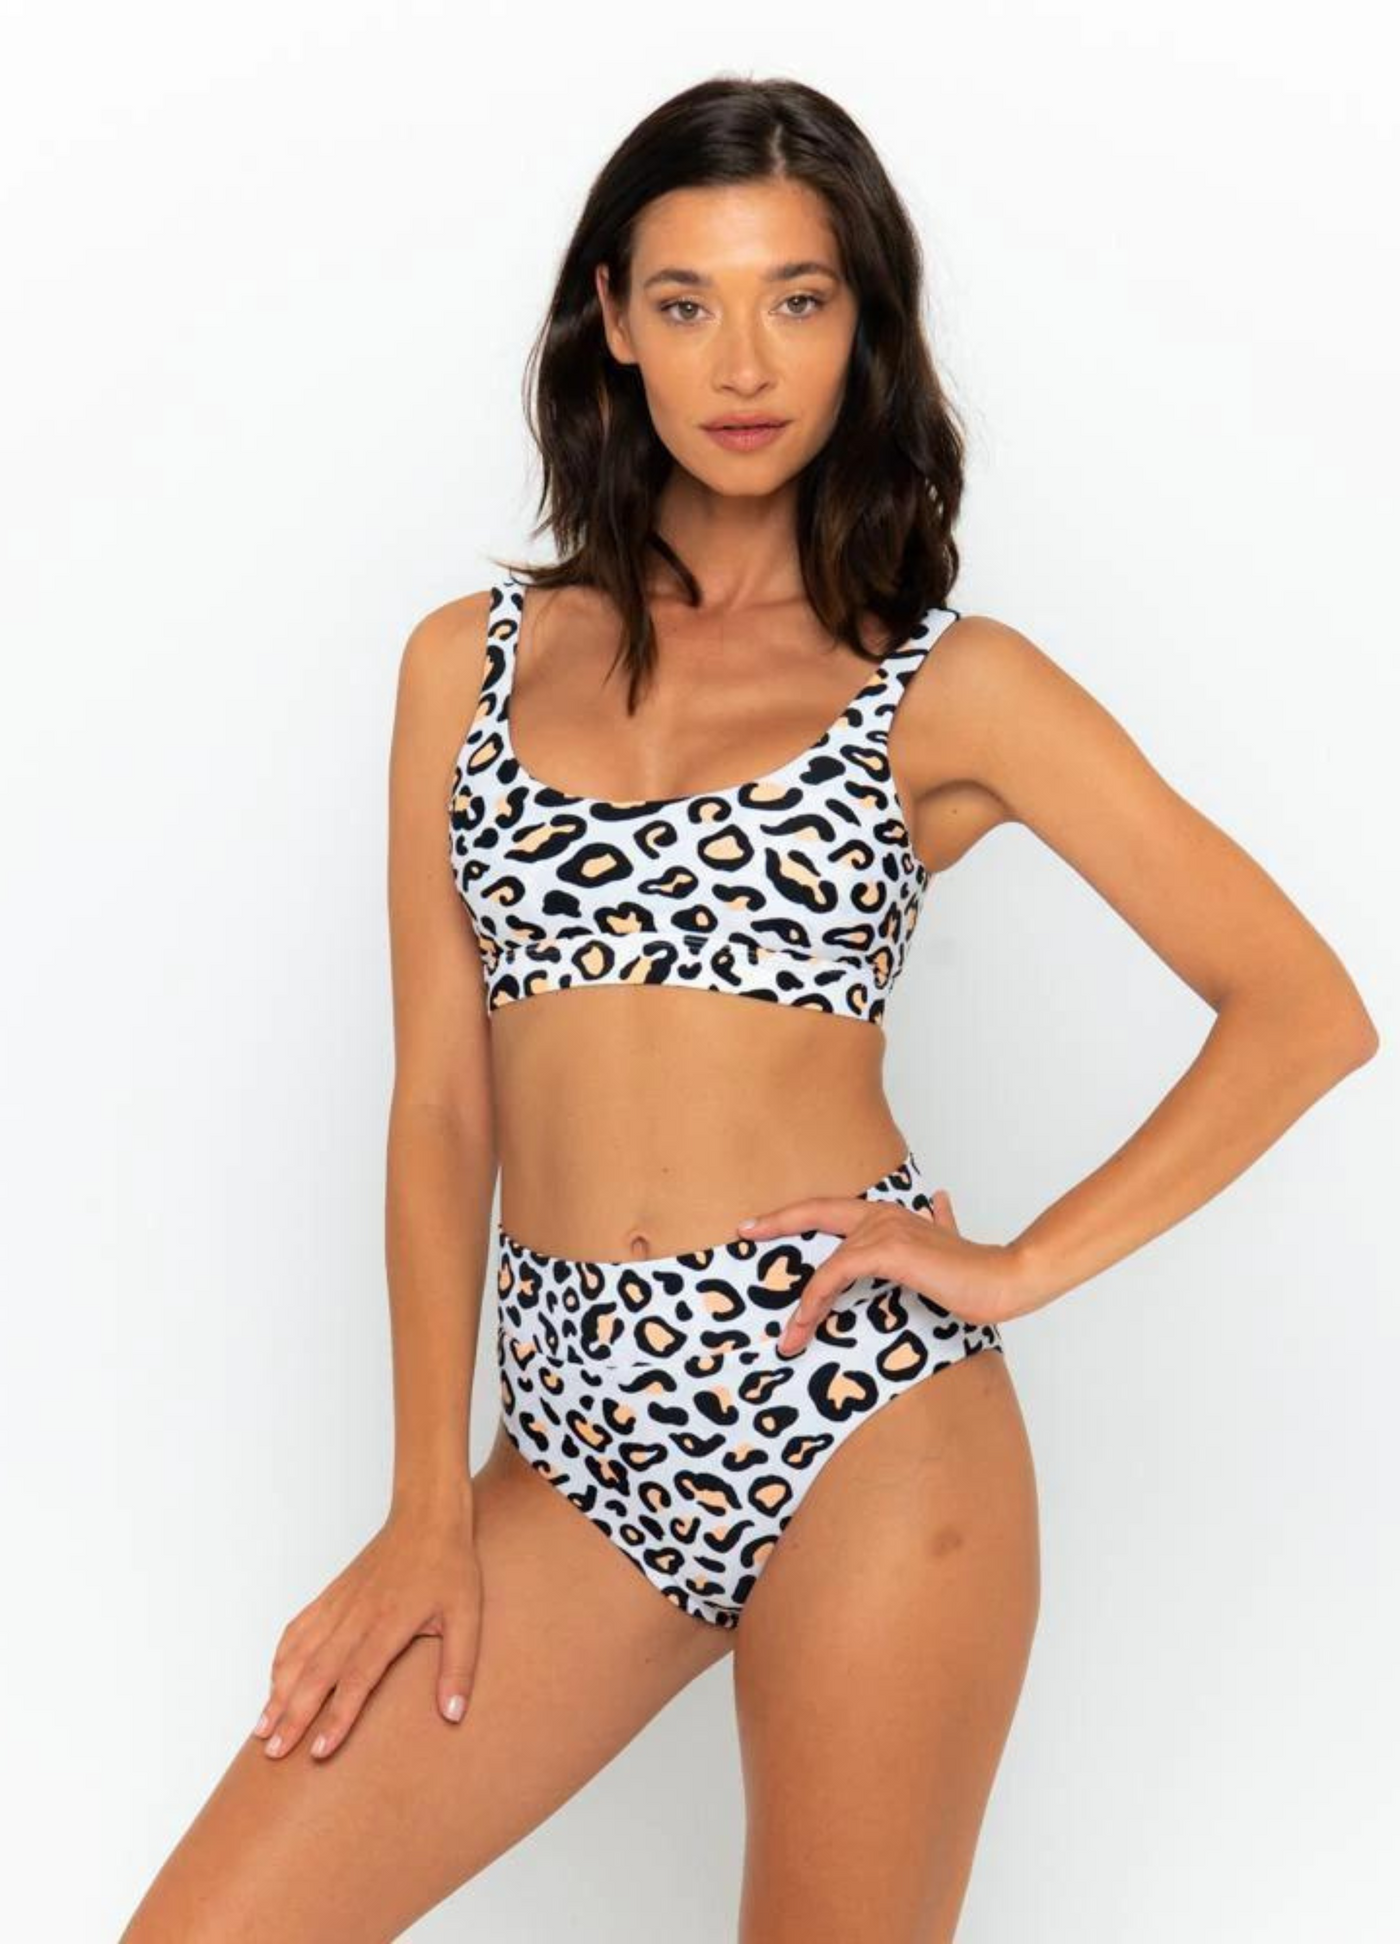 Model wearing the safari animal print bikini from infamous swim